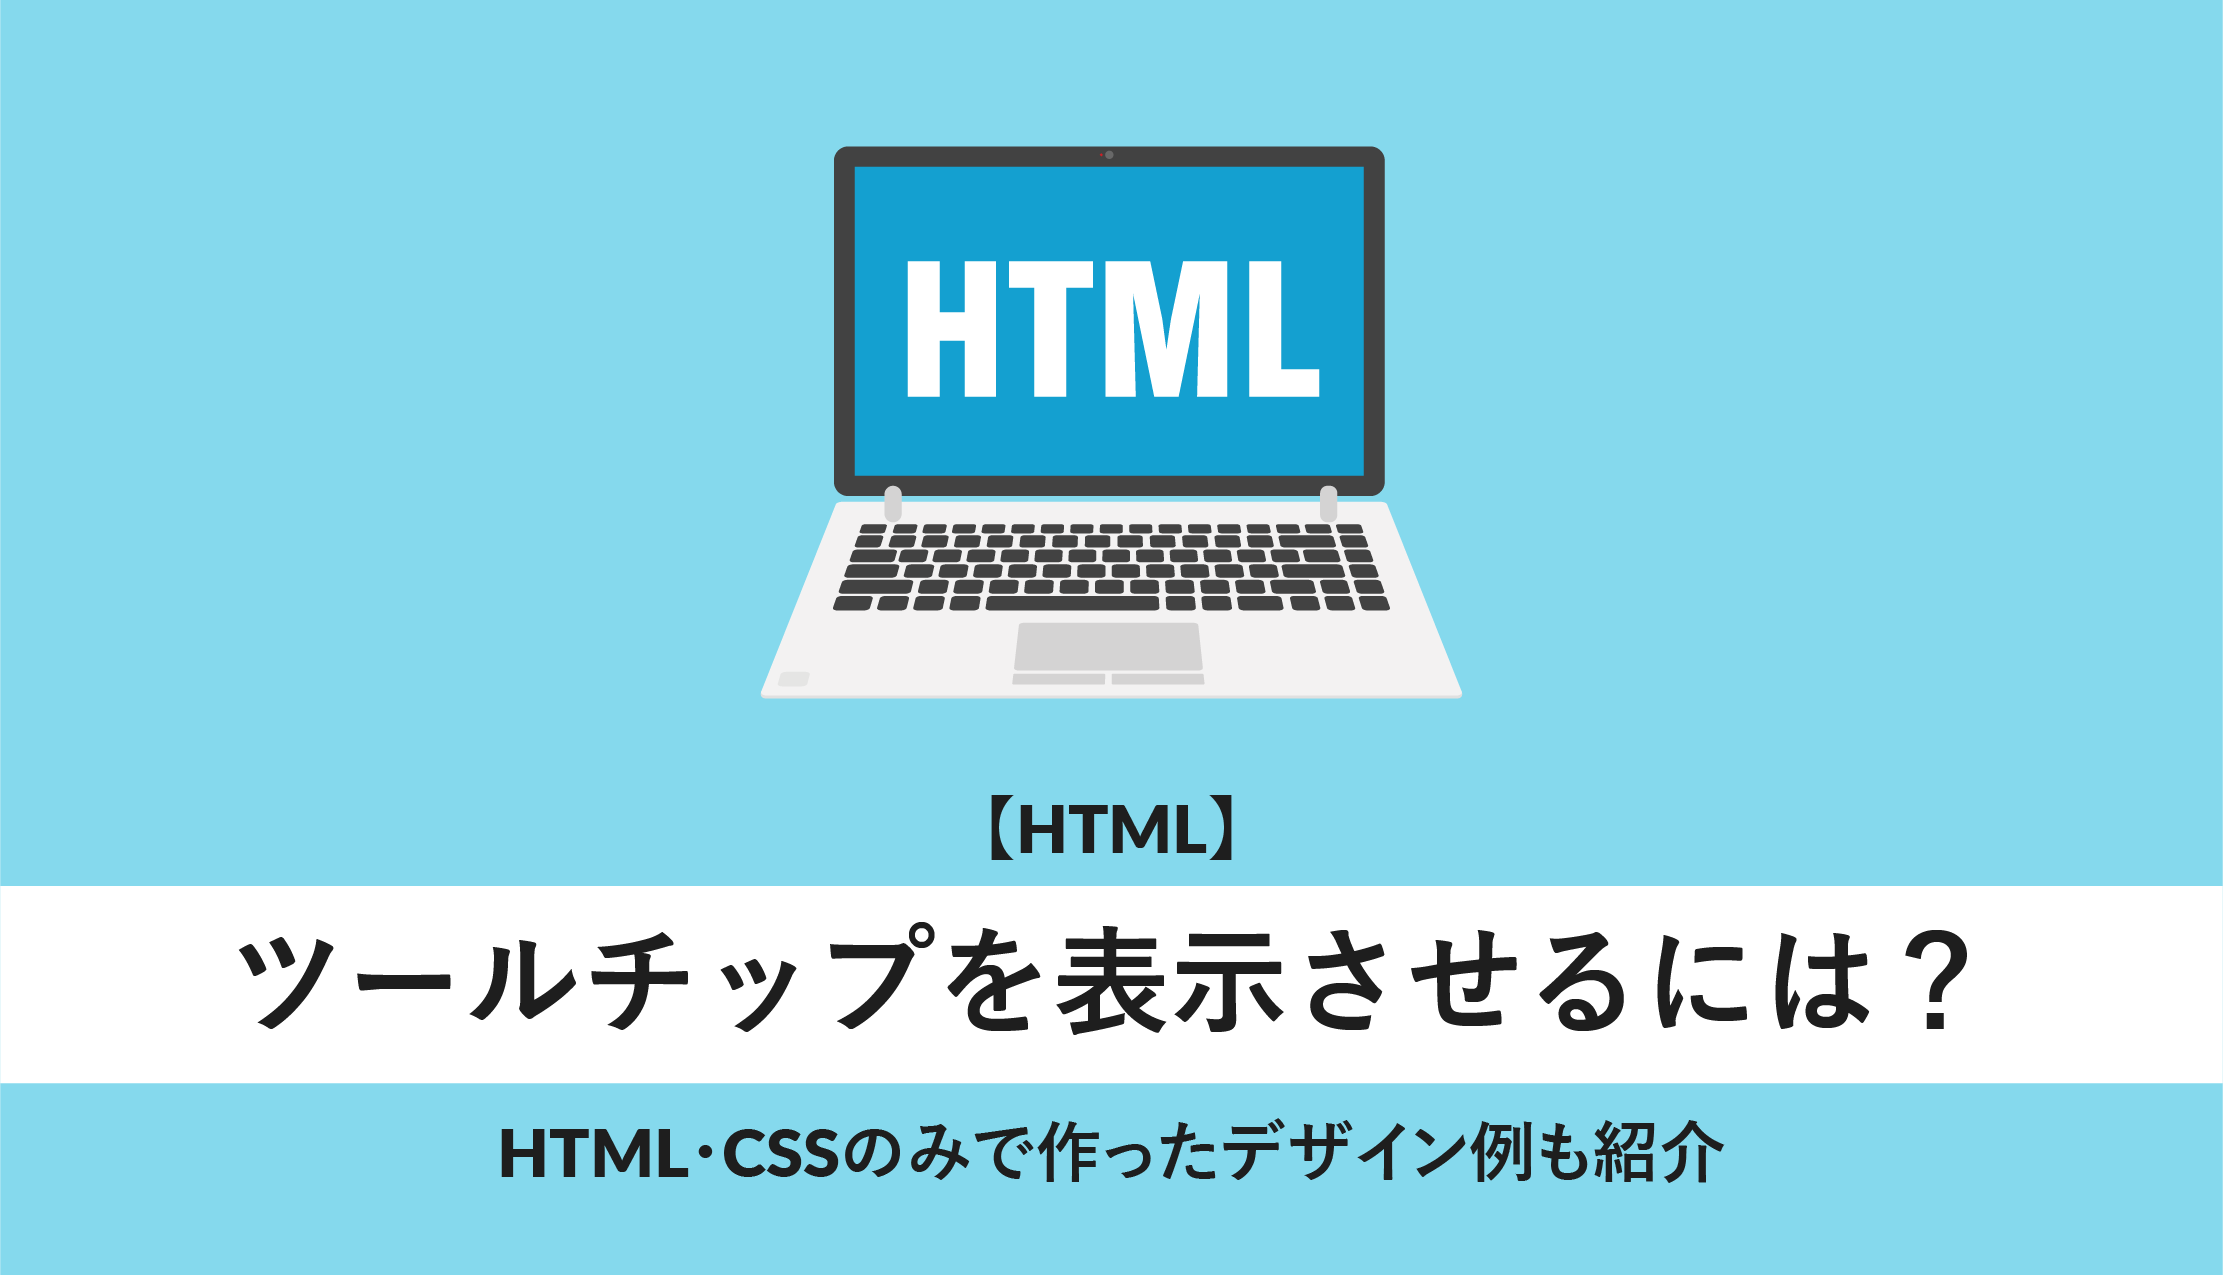 html ツールチップ